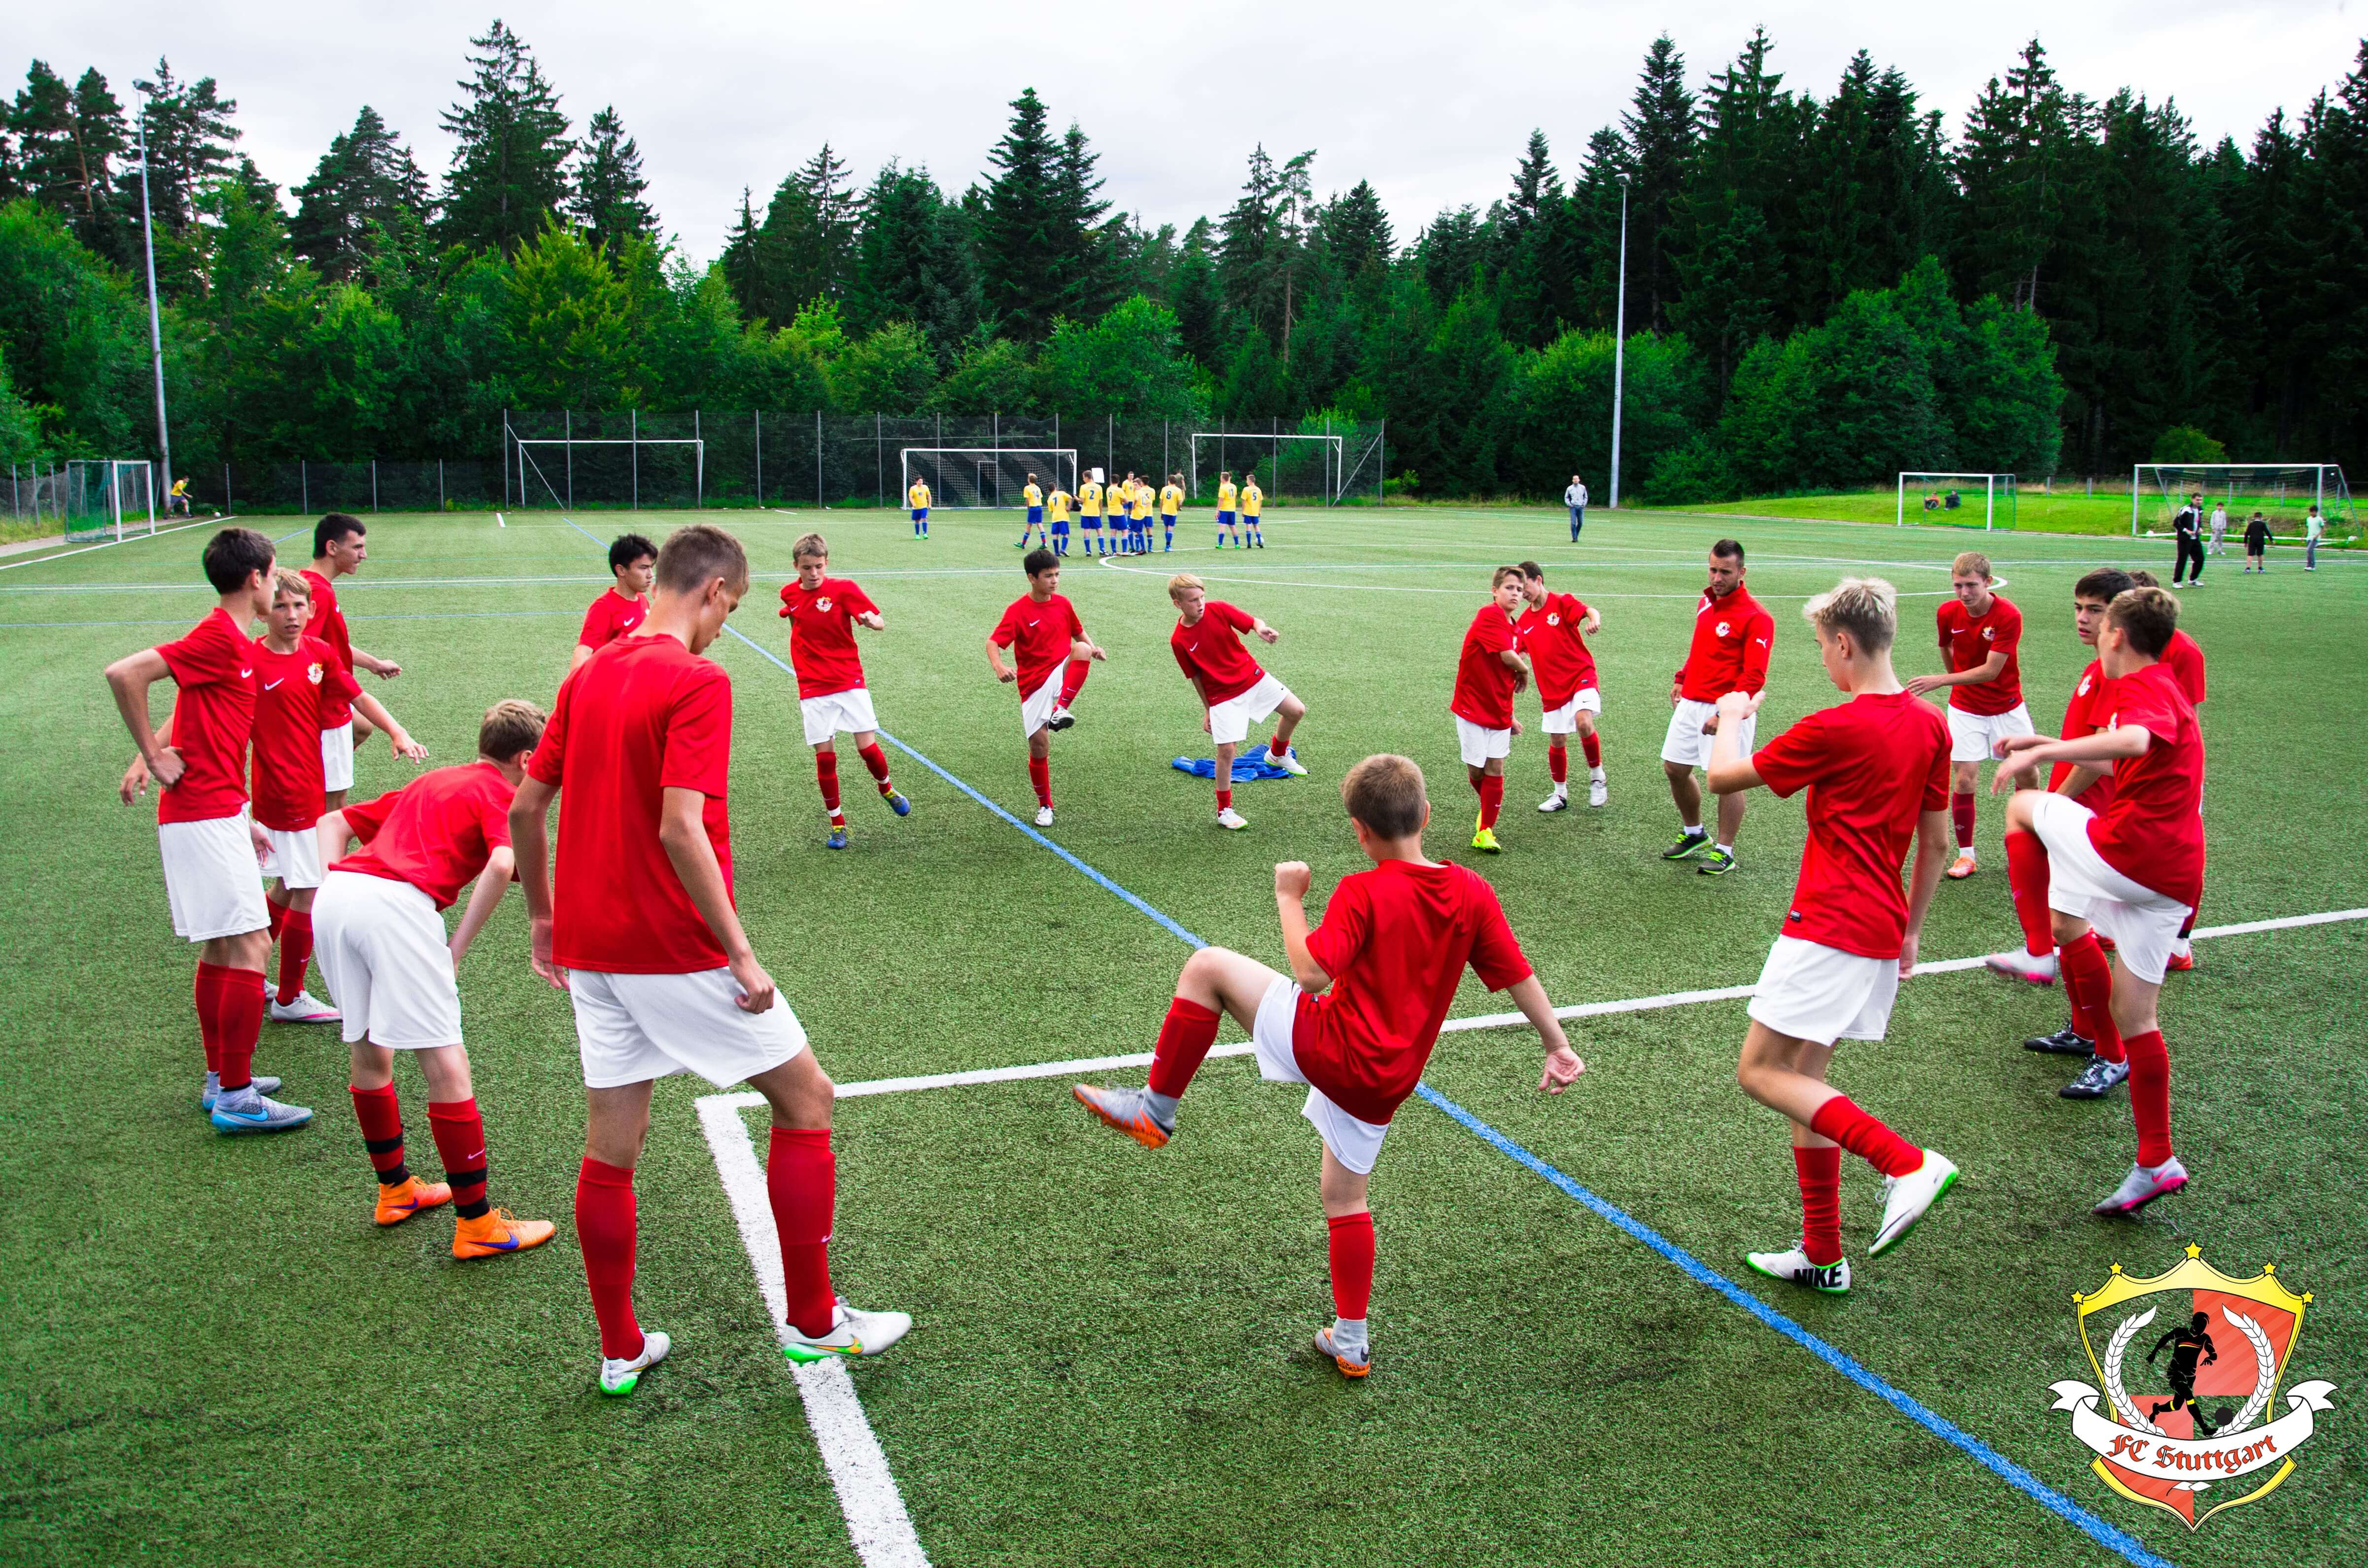 «FC Stuttgart» – путевки в детский лагерь 2023, Германия, Штутгарт.